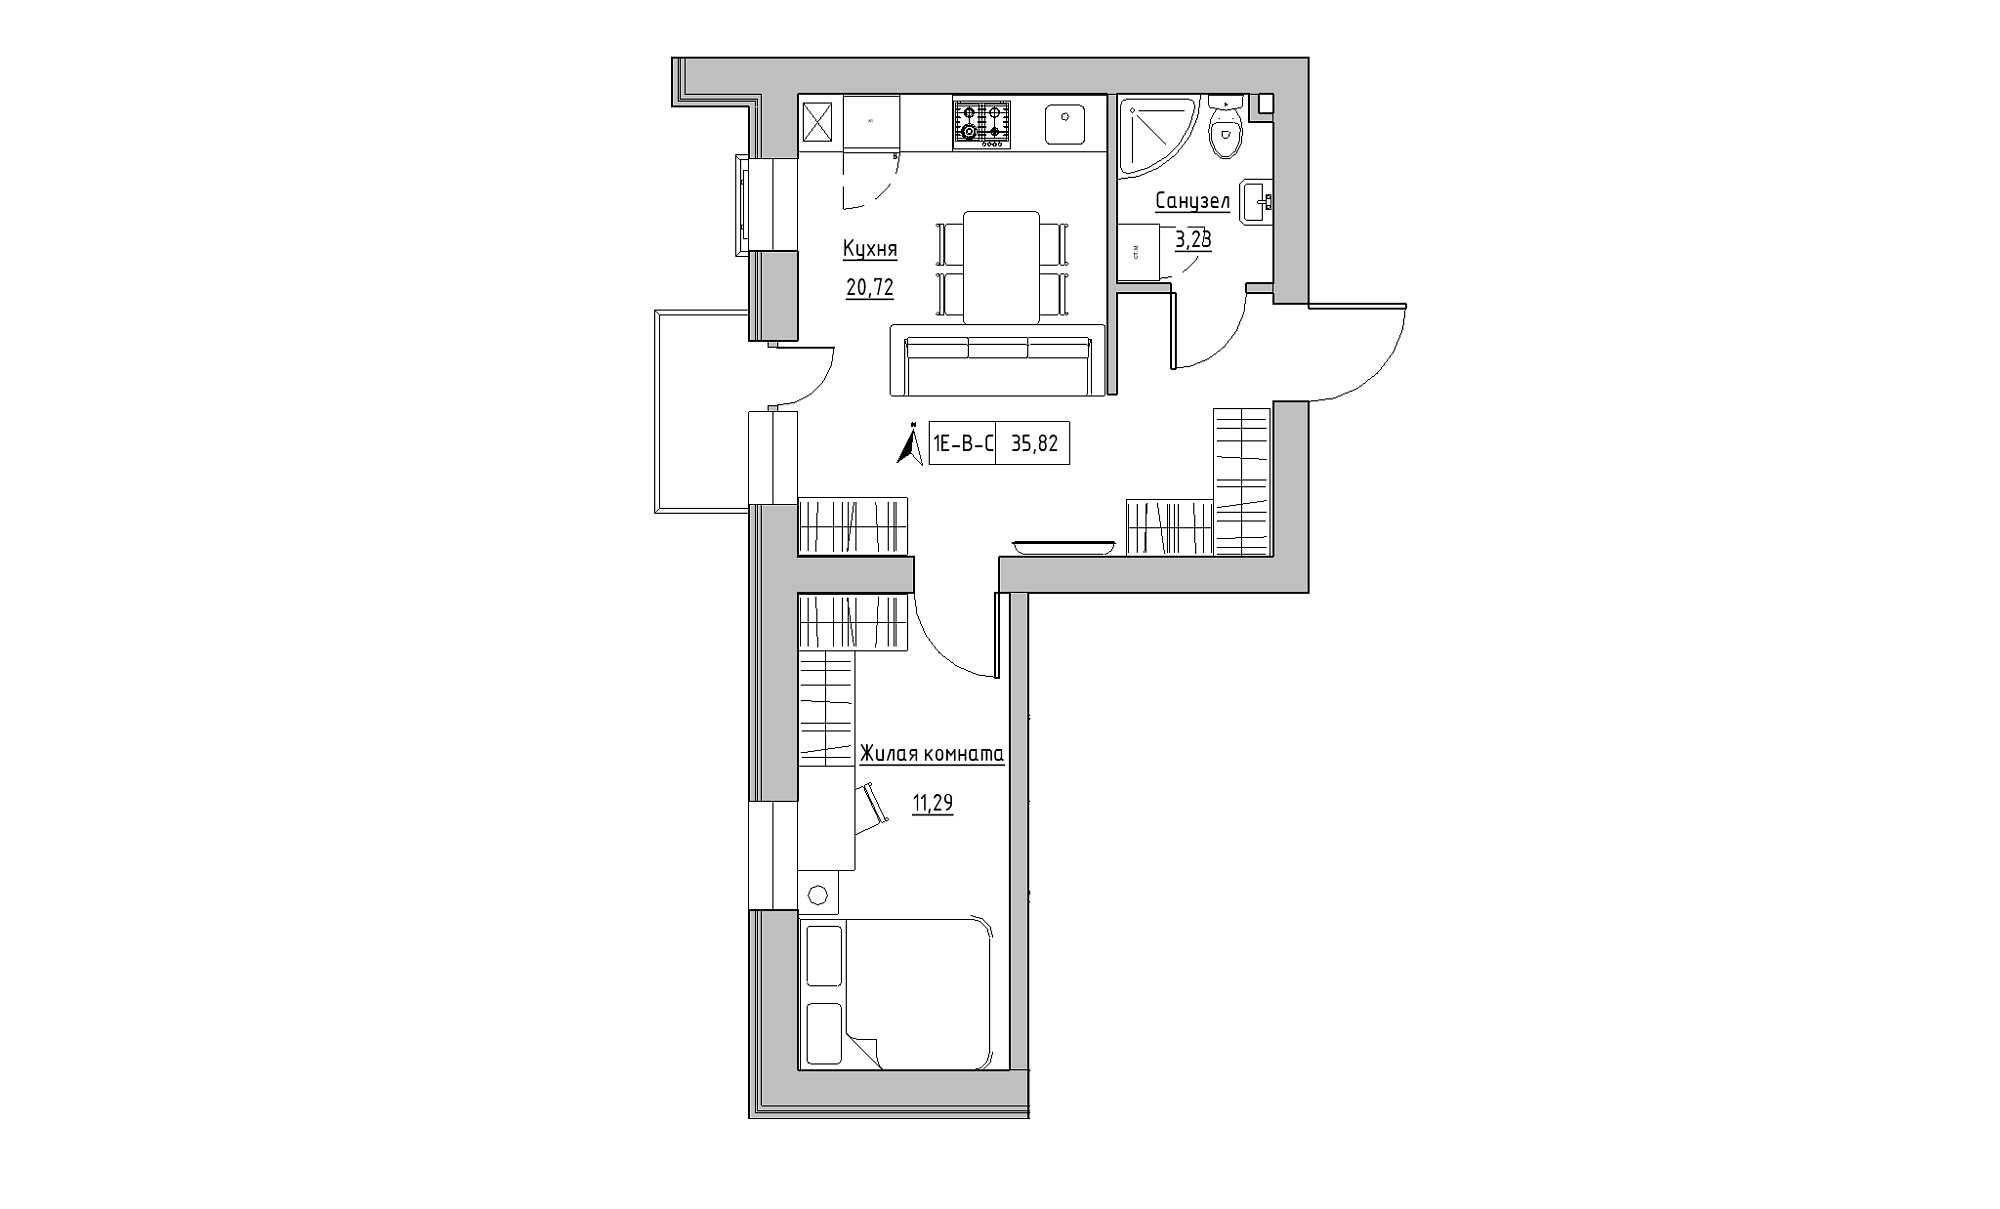 Планировка 1-к квартира площей 35.82м2, KS-016-04/0009.